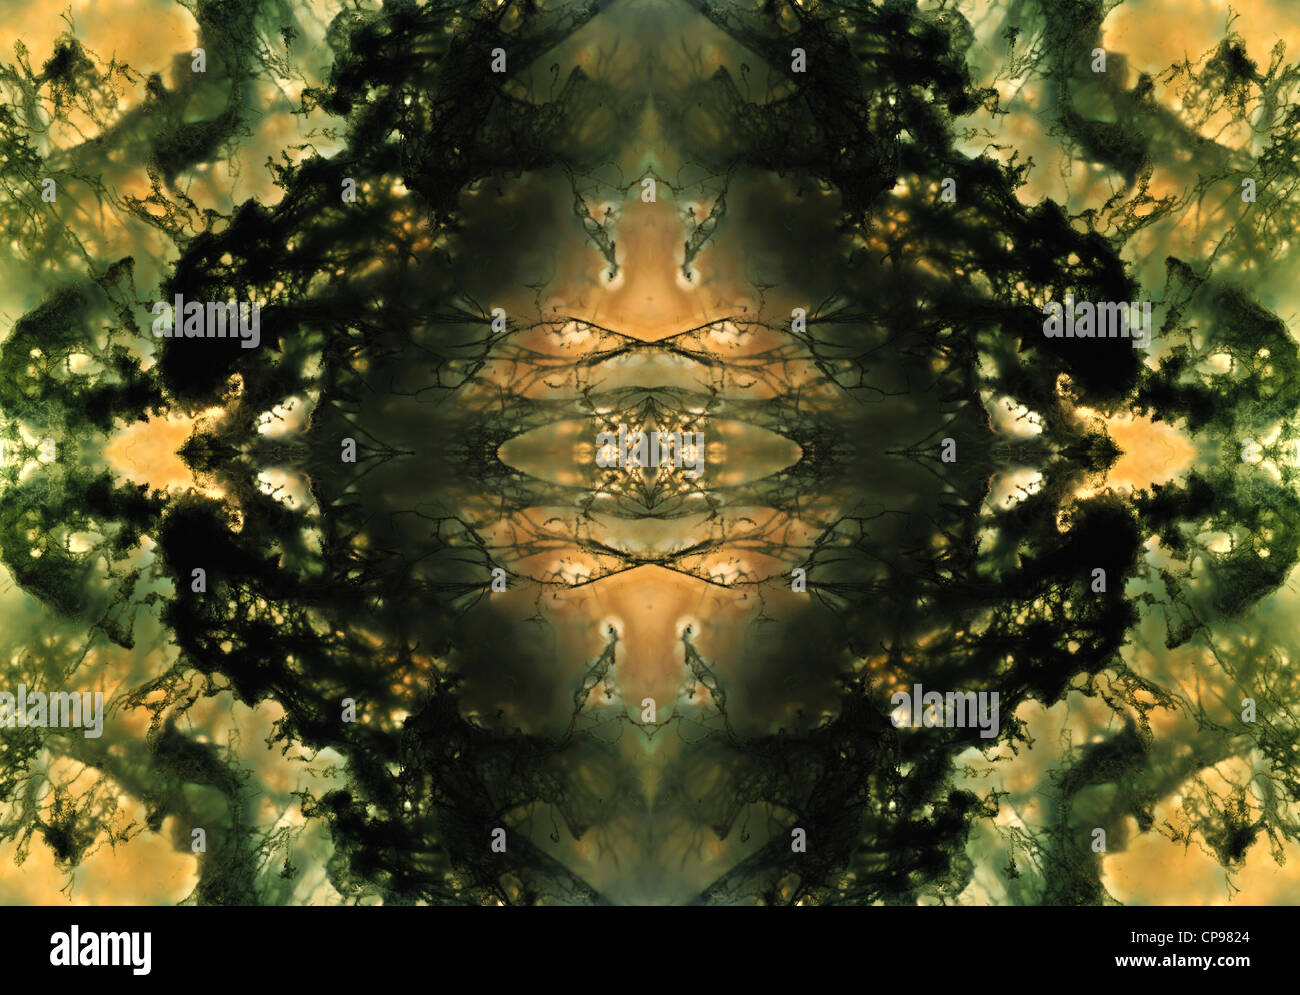 Agate Mousse - modèle symétrique fait à partir de l'image répétée Banque D'Images